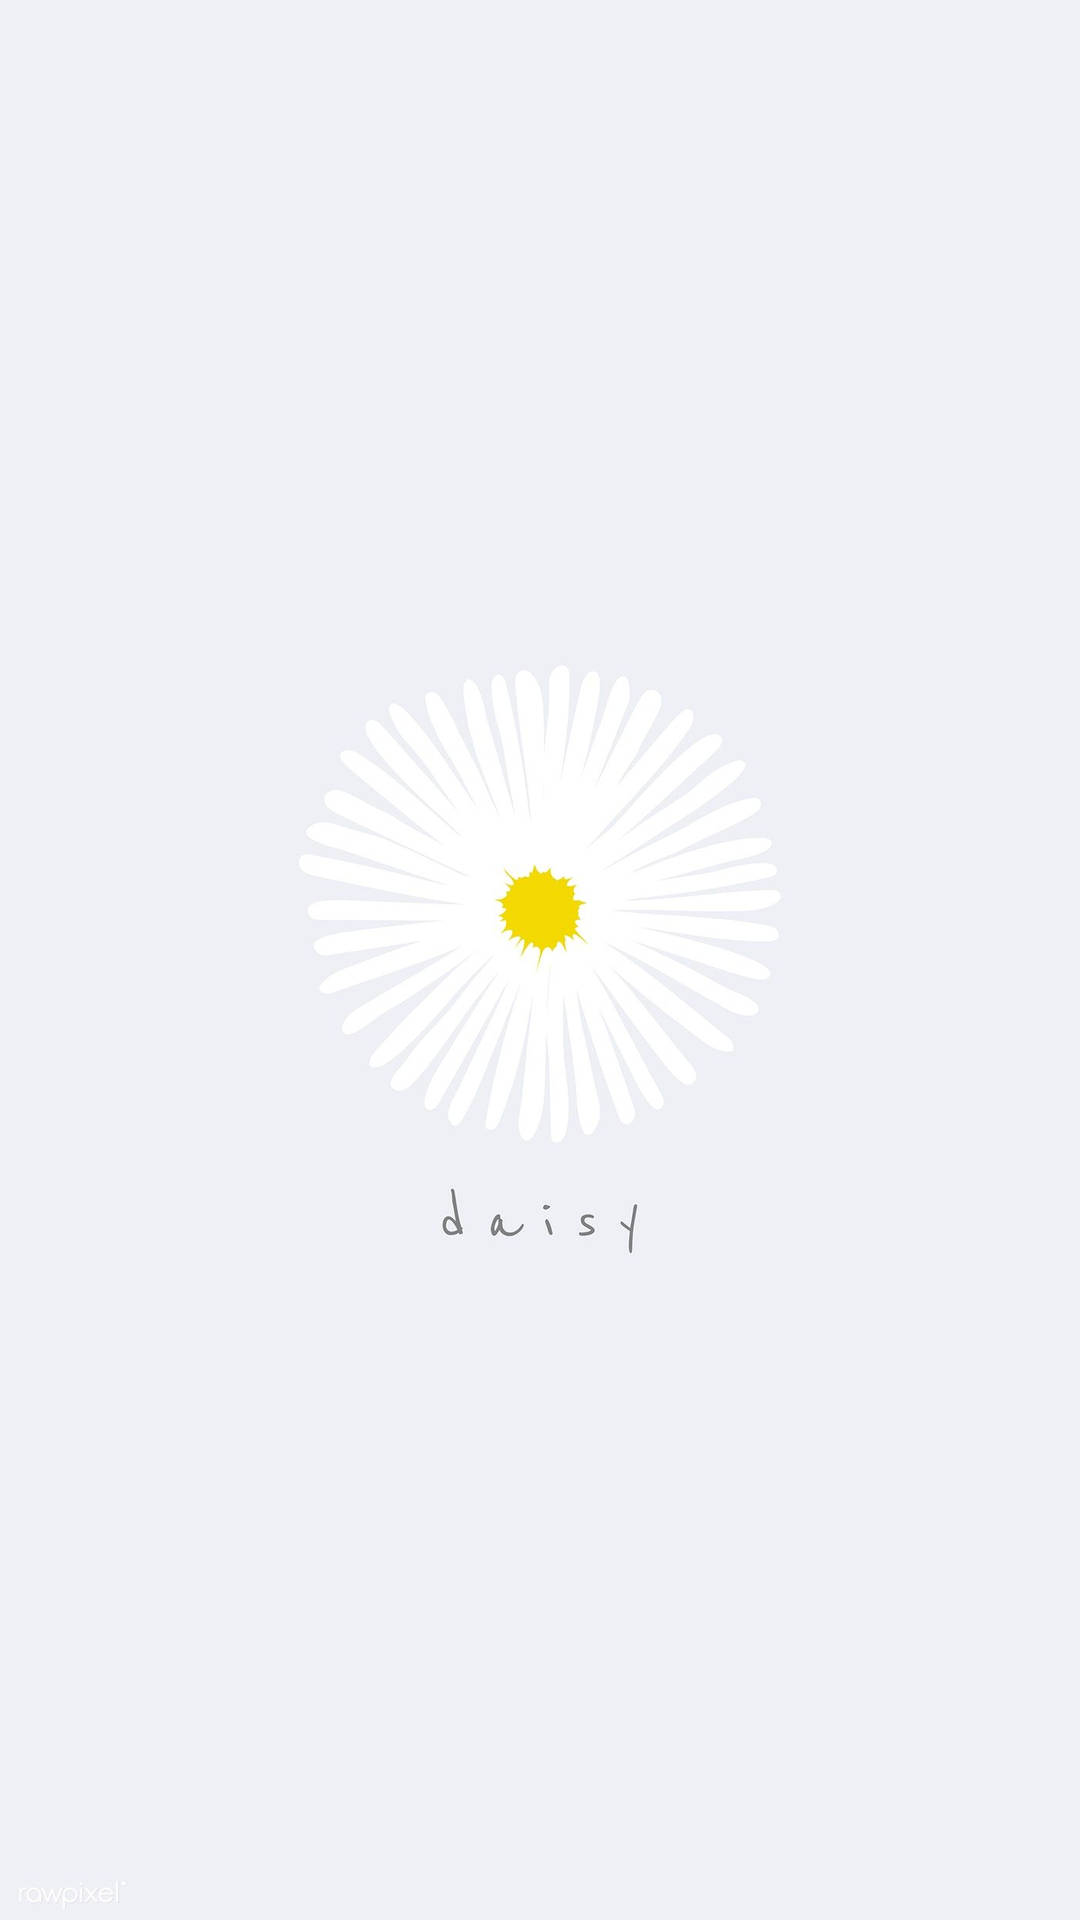 White Daisy Flower iPhone Art Wallpaper